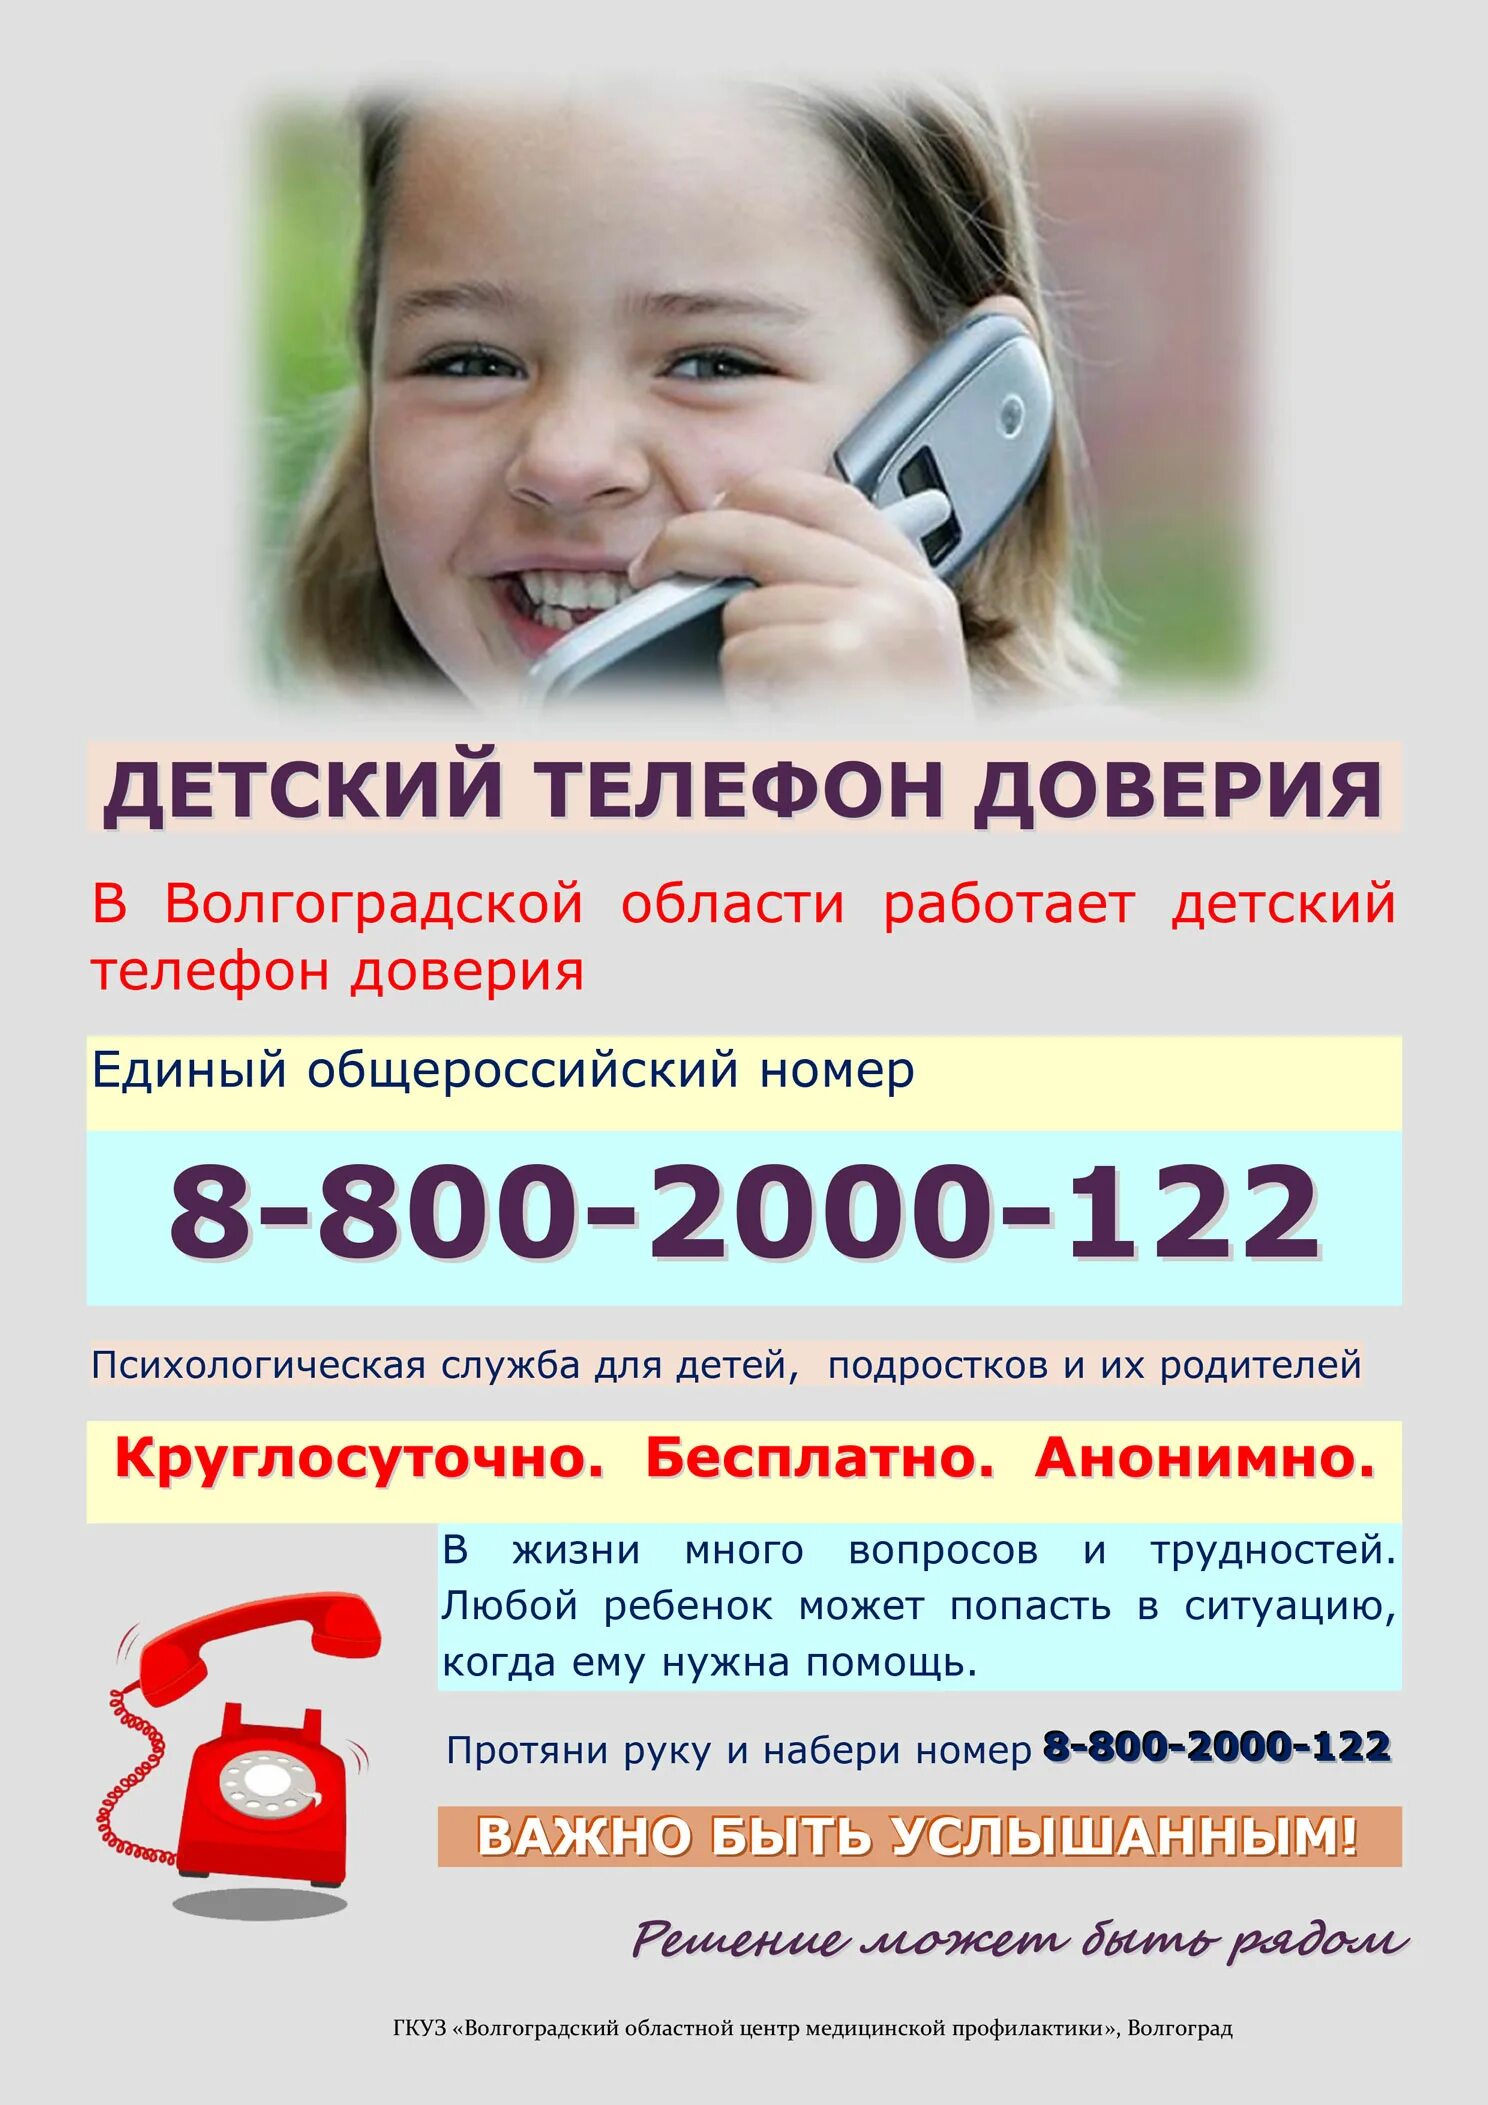 Служба помощи номер телефона. Телефон доверия. Детский телефон доверия. Телефон доверия для детей подростков и их родителей. Номер телефона доверия для детей.